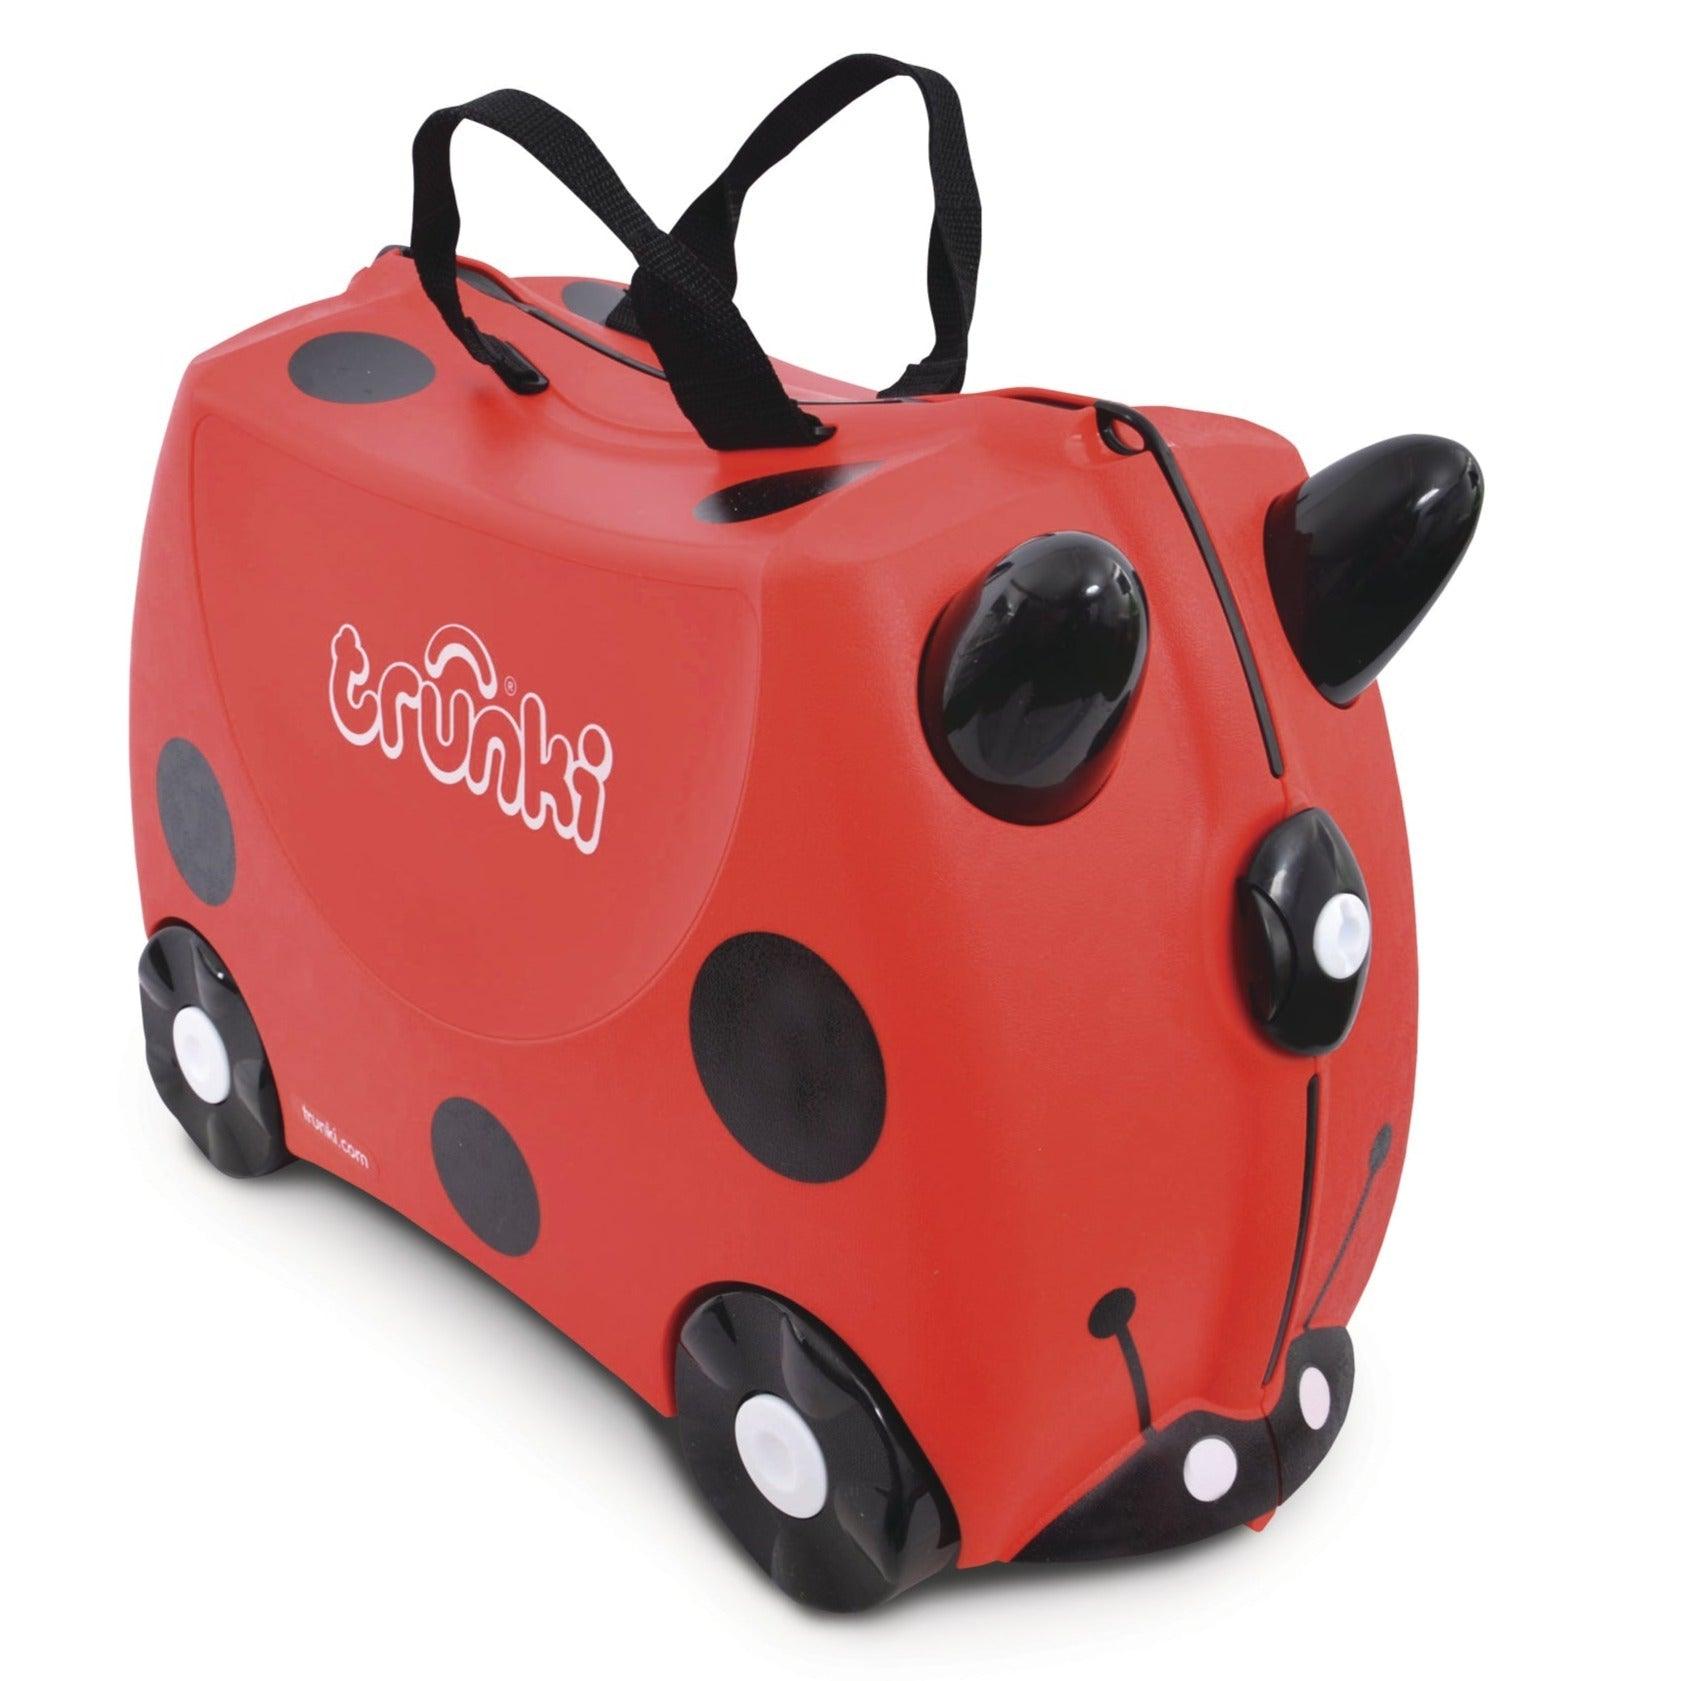 Trunki: Βαλίτσα ιππασίας για παιδιά Ladybug Harley